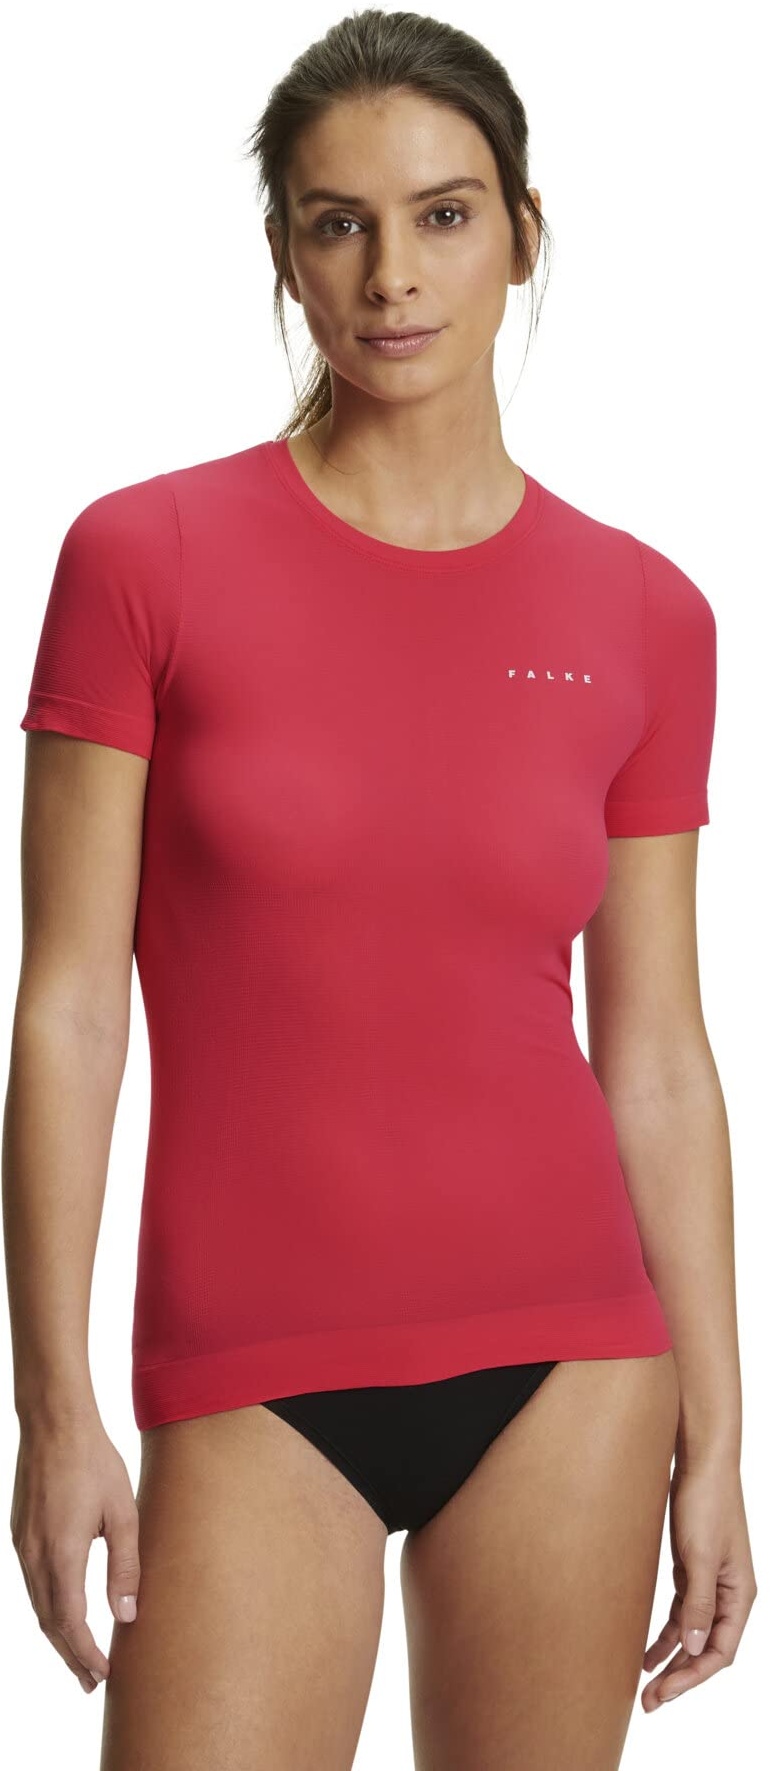 FALKE Damen Baselayer-Shirt Ultralight Cool Round Neck W S/S SH Funktionsmaterial Schnelltrocknend 1 Stück, Rot (Rose 8564), L